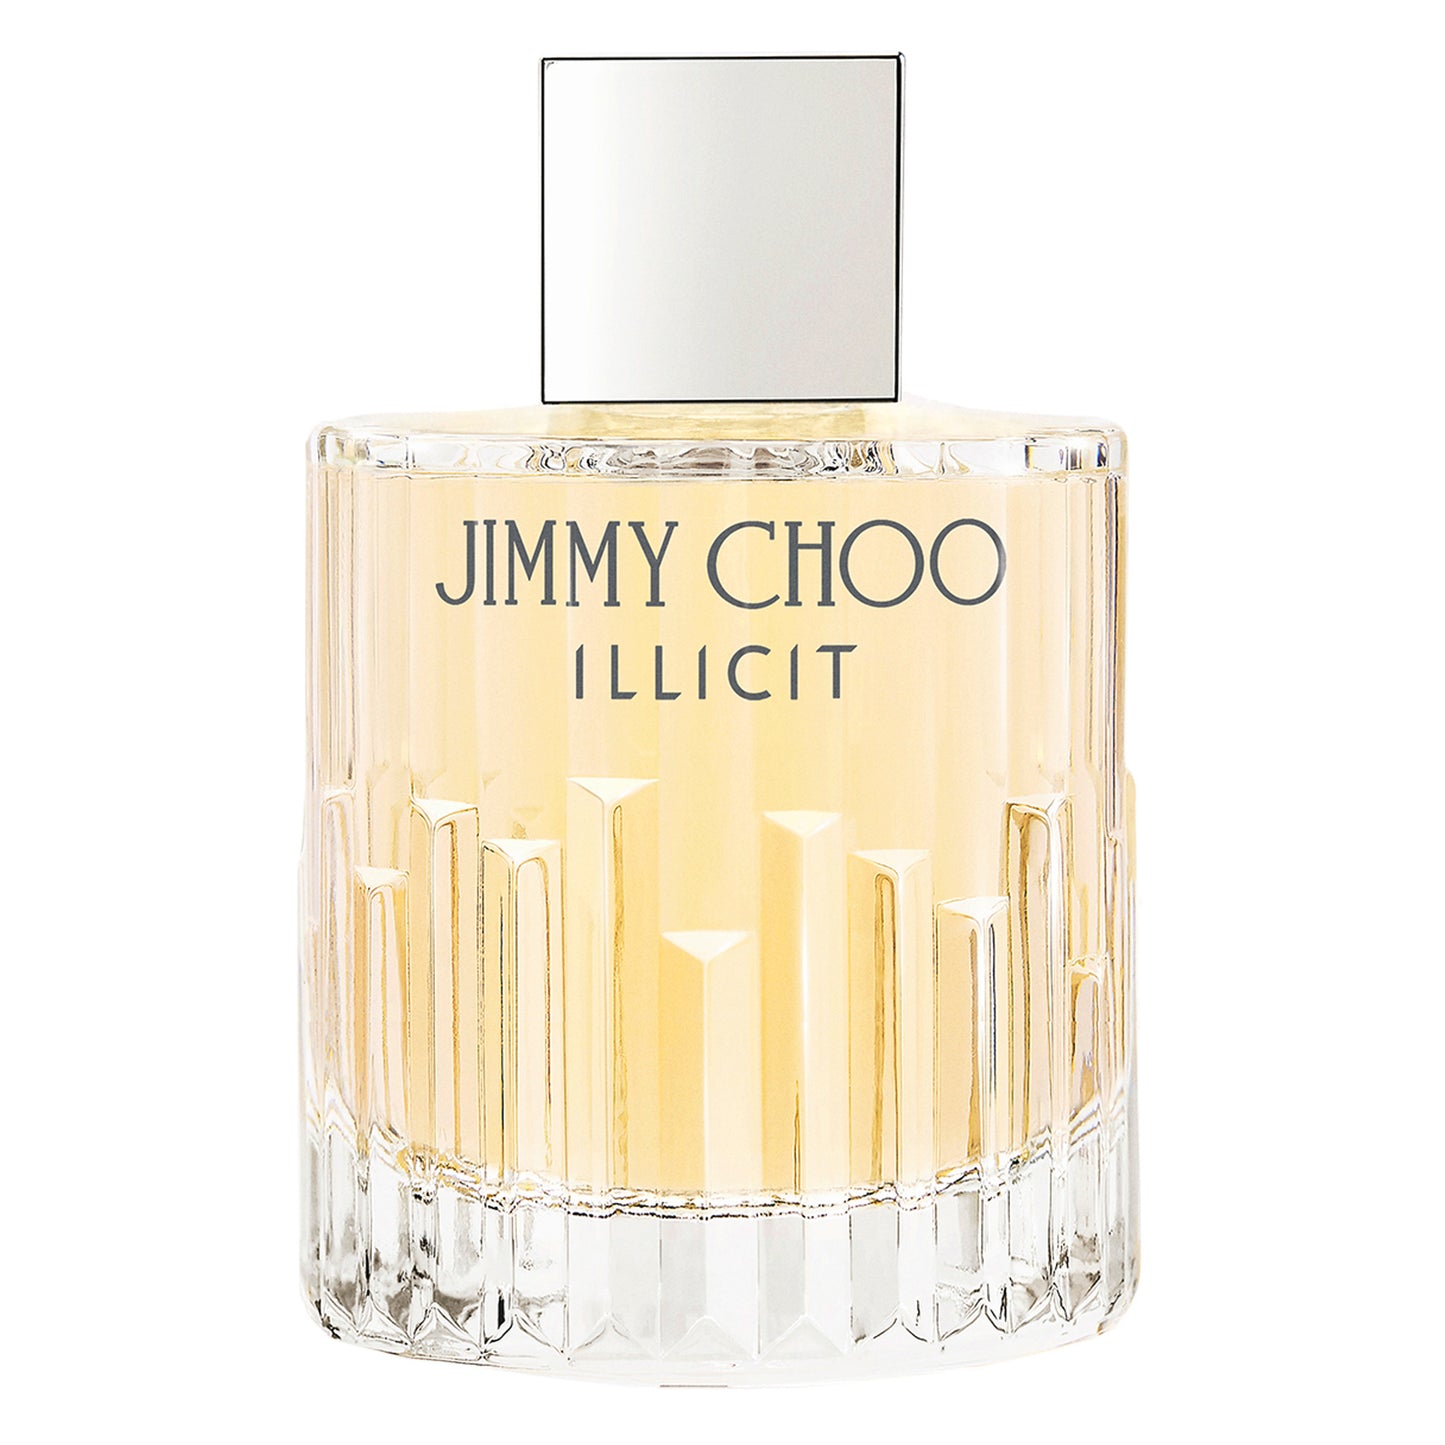 Jimmy Choo Illicit Eau de Parfum. 3.4Oz/100ml